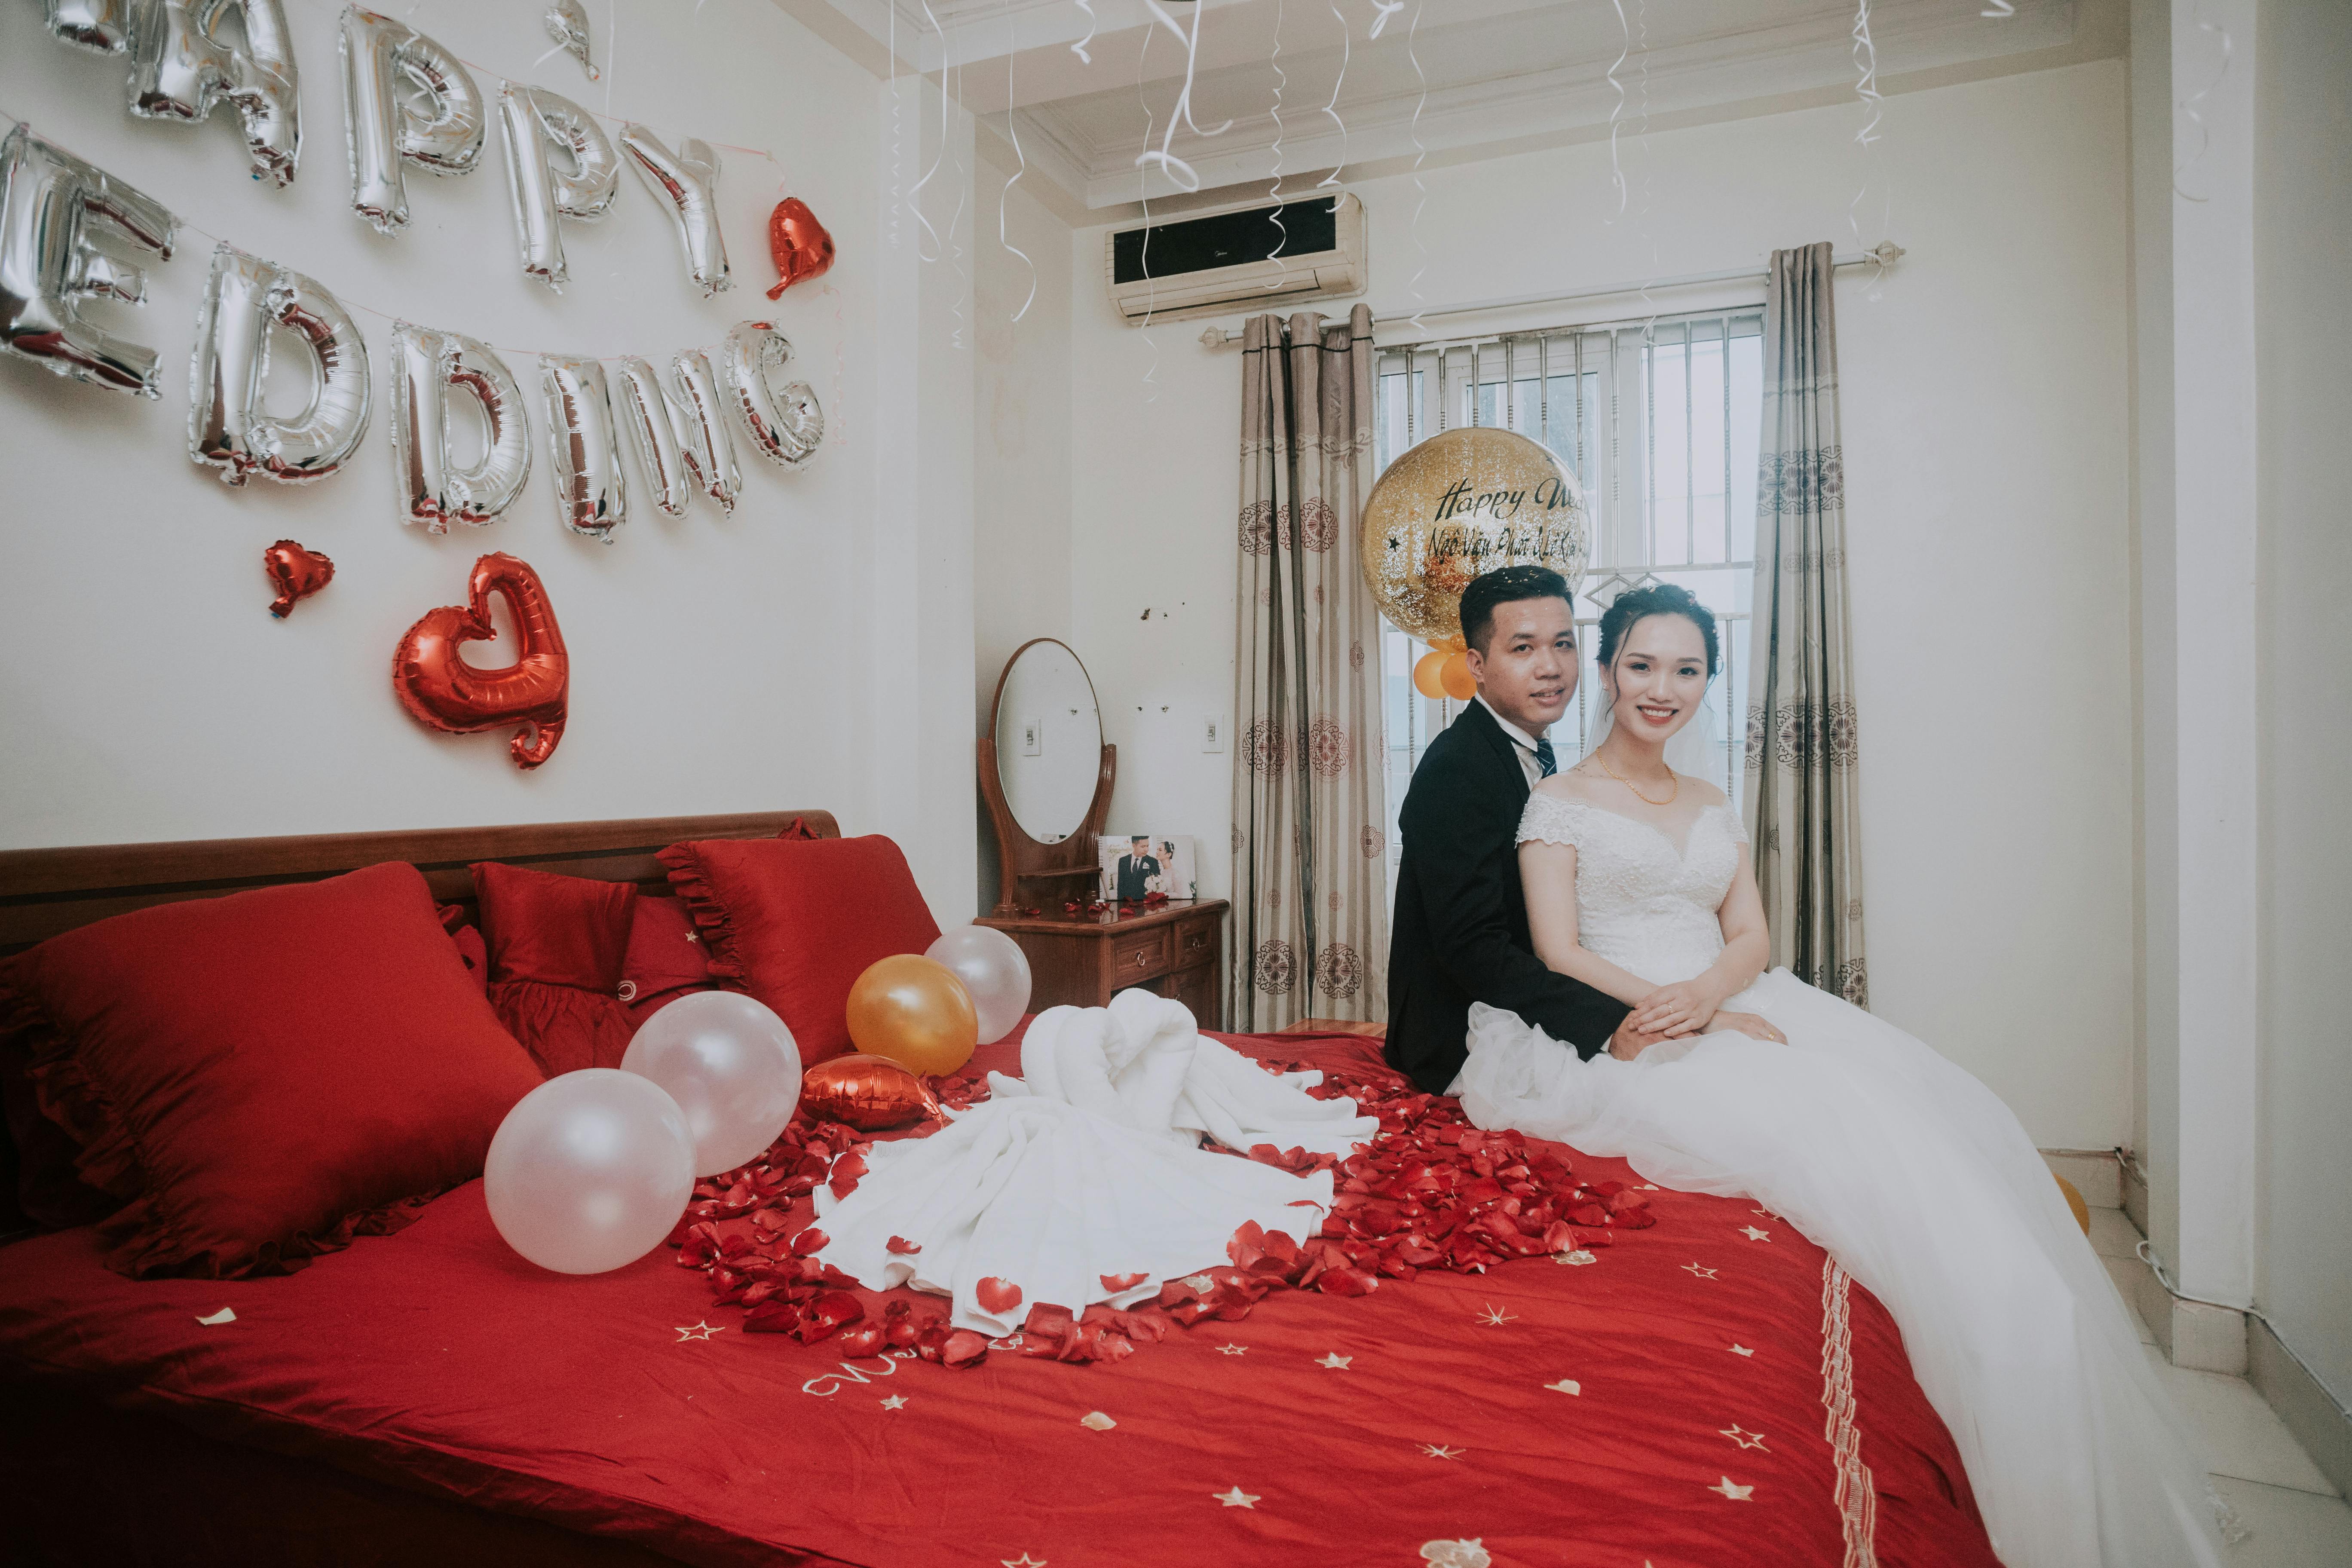 Una pareja fotografiada en la cama de una habitación de hotel | Foto: Pexels